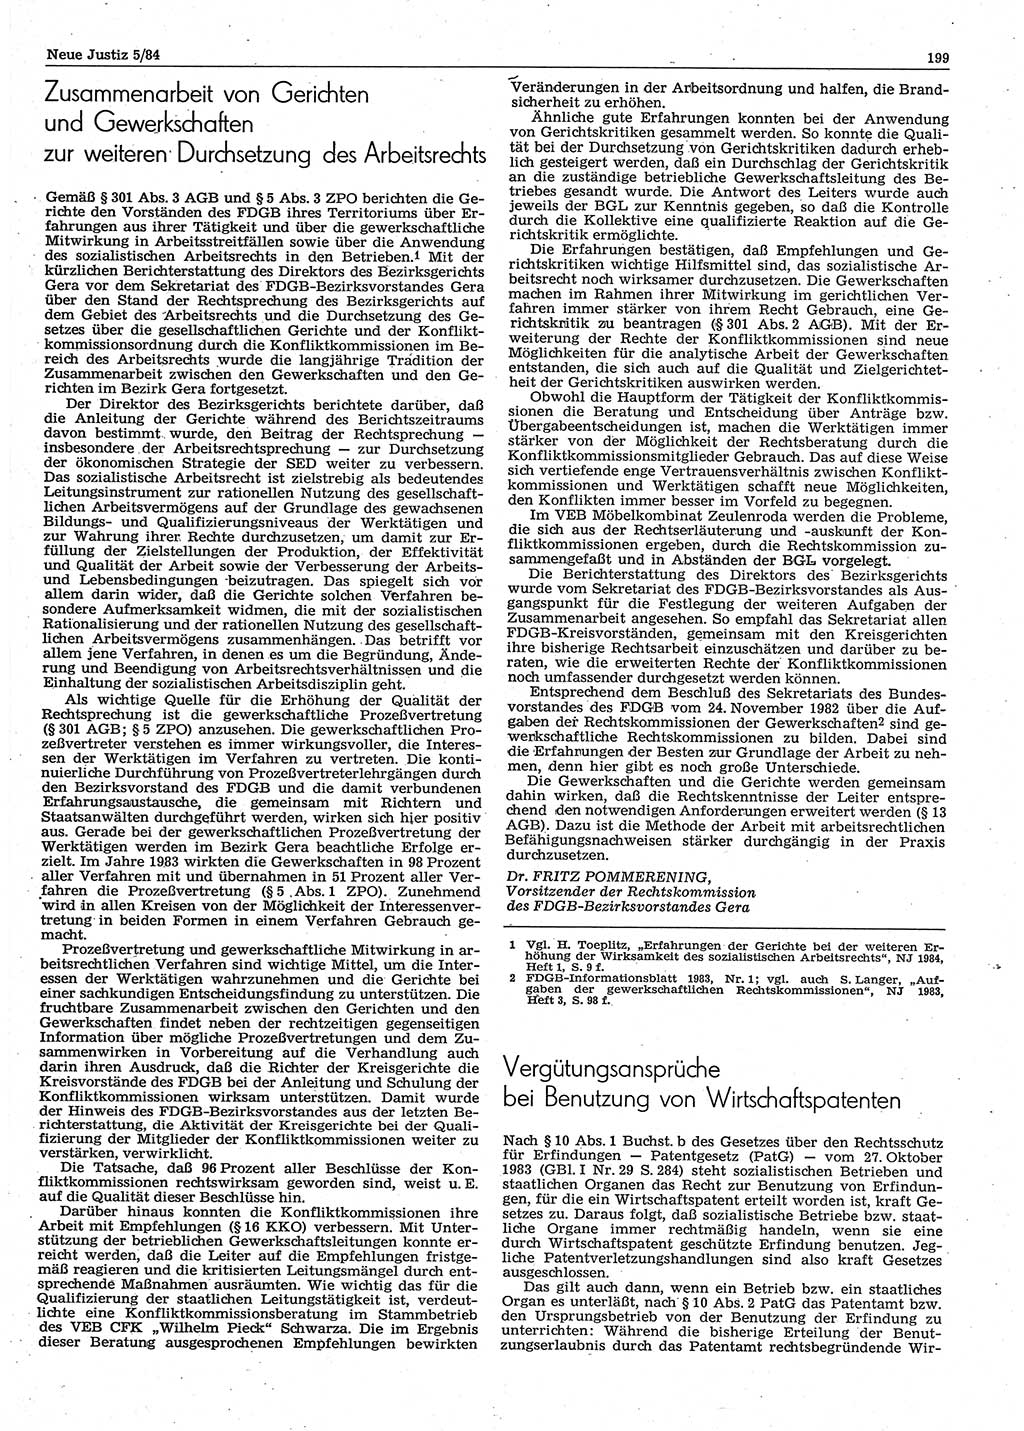 Neue Justiz (NJ), Zeitschrift für sozialistisches Recht und Gesetzlichkeit [Deutsche Demokratische Republik (DDR)], 38. Jahrgang 1984, Seite 199 (NJ DDR 1984, S. 199)